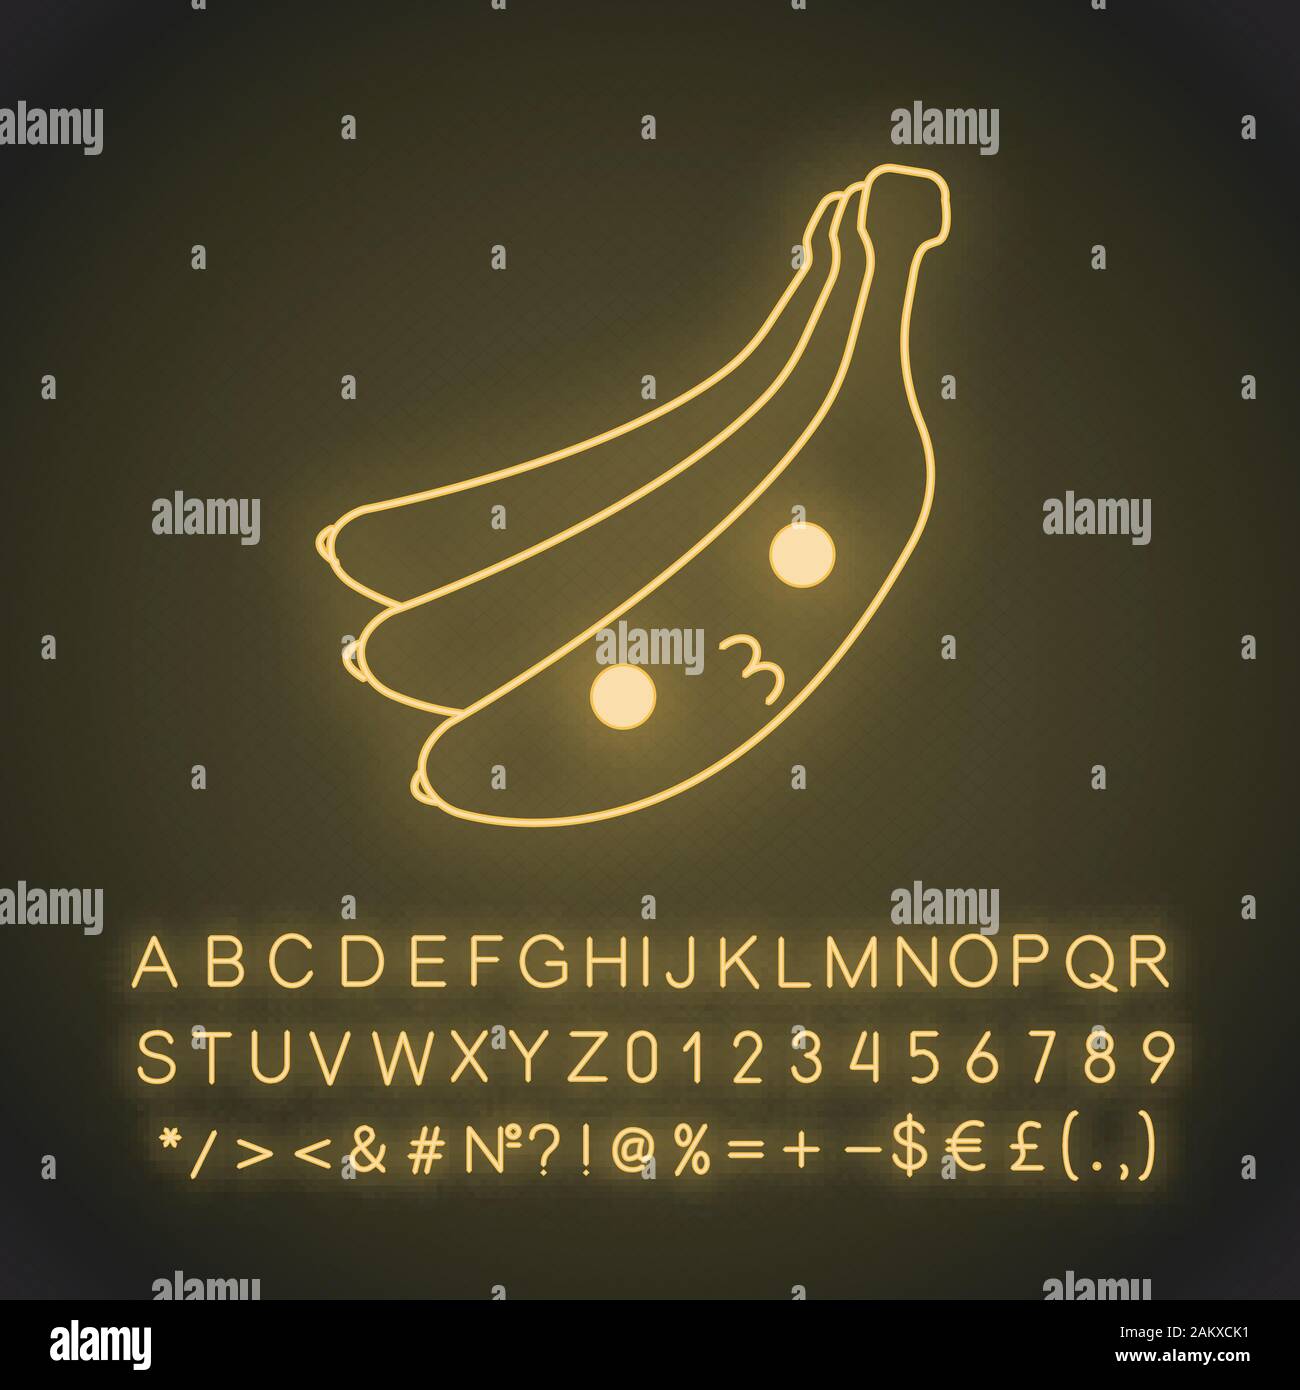 Cute kawaii neon light banane caractère. Fruit avec visage souriant. Professionnels de la nourriture. Emoji drôles, émoticône, baiser. Icône rayonnante avec l'alphabet, les nombres, symbole Illustration de Vecteur